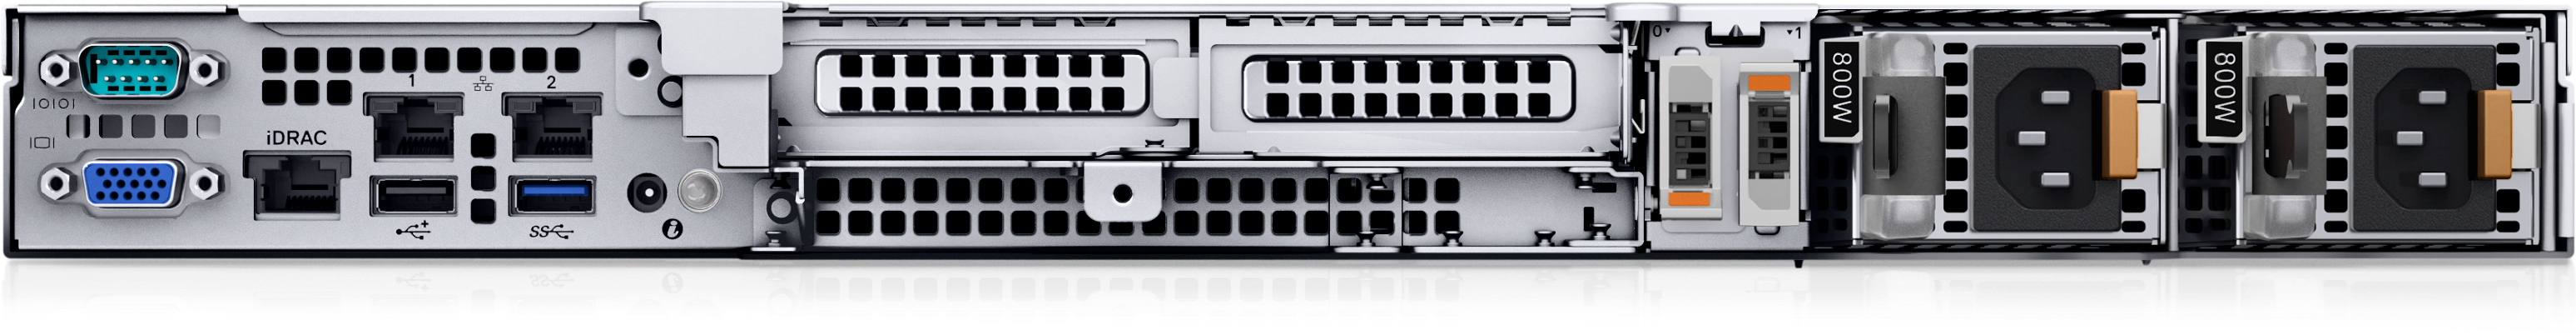 Serveur au format rack PowerEdge R350 | Dell France